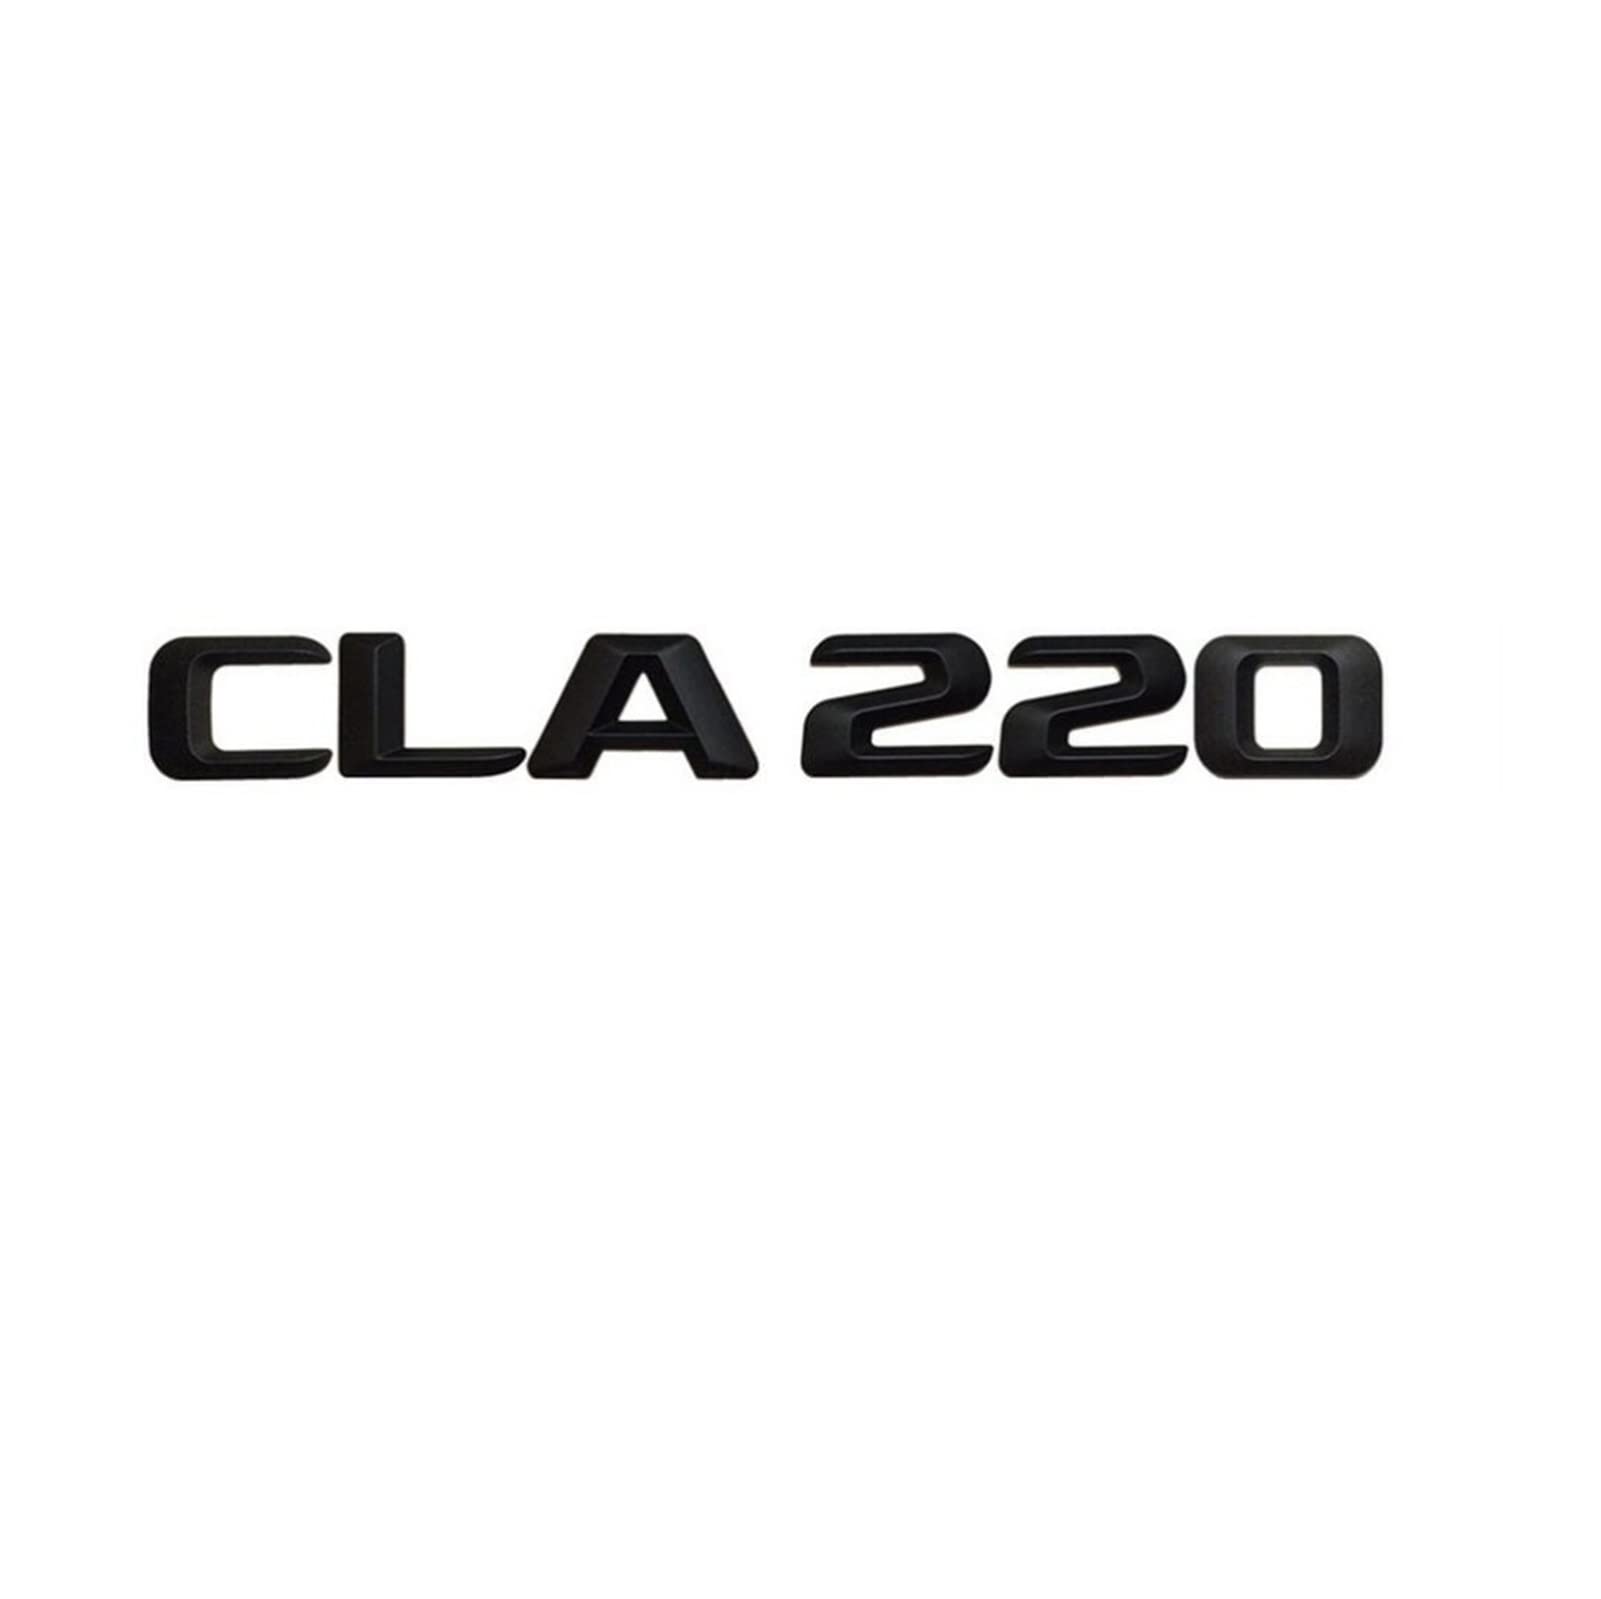 LORIER Mattschwarz CLA 220" Auto-Kofferraum-hintere Buchstaben-Wort-Abzeichen-Emblem-Buchstaben-Aufkleber-Aufkleber, kompatibel mit Mercedes Benz CLA-Klasse CLA220 Logoaufkleber und Aufkl von LoRier